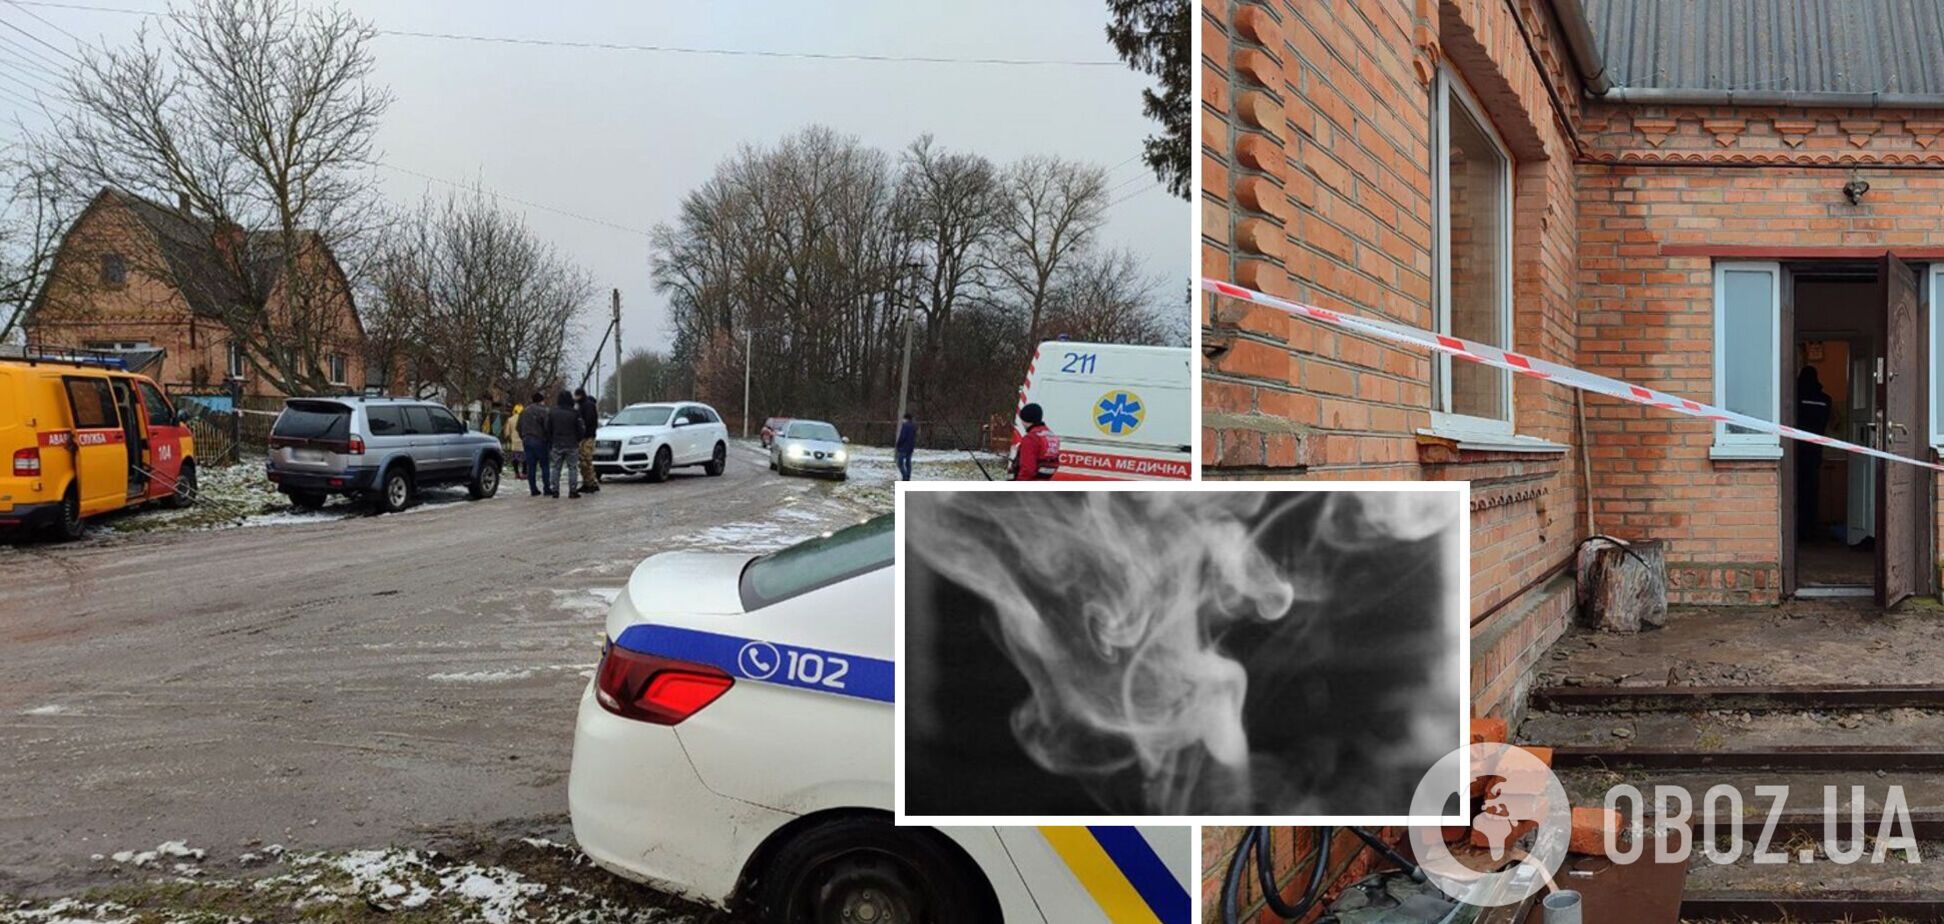 На Житомирщині семеро осіб загинули через отруєння чадним газом: деталі трагедії